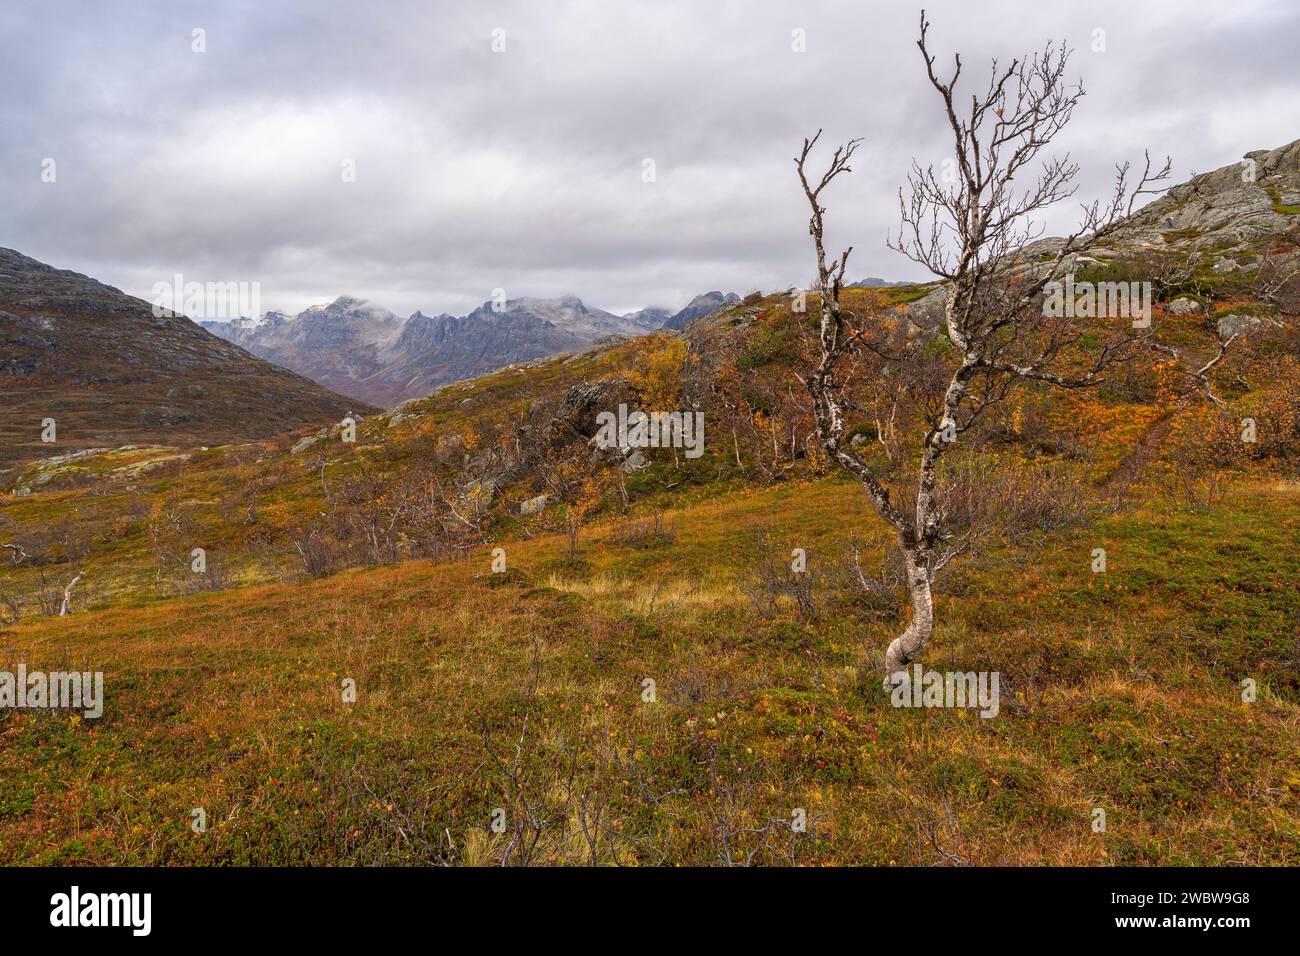 sich krümmende Birken in den Bergen von Kvaløya, Norwegen. gelb und Orange gefärbte Bäume im Herbst in einem Hochtal, rote gelbe und Grüne Pflanzen Foto Stock